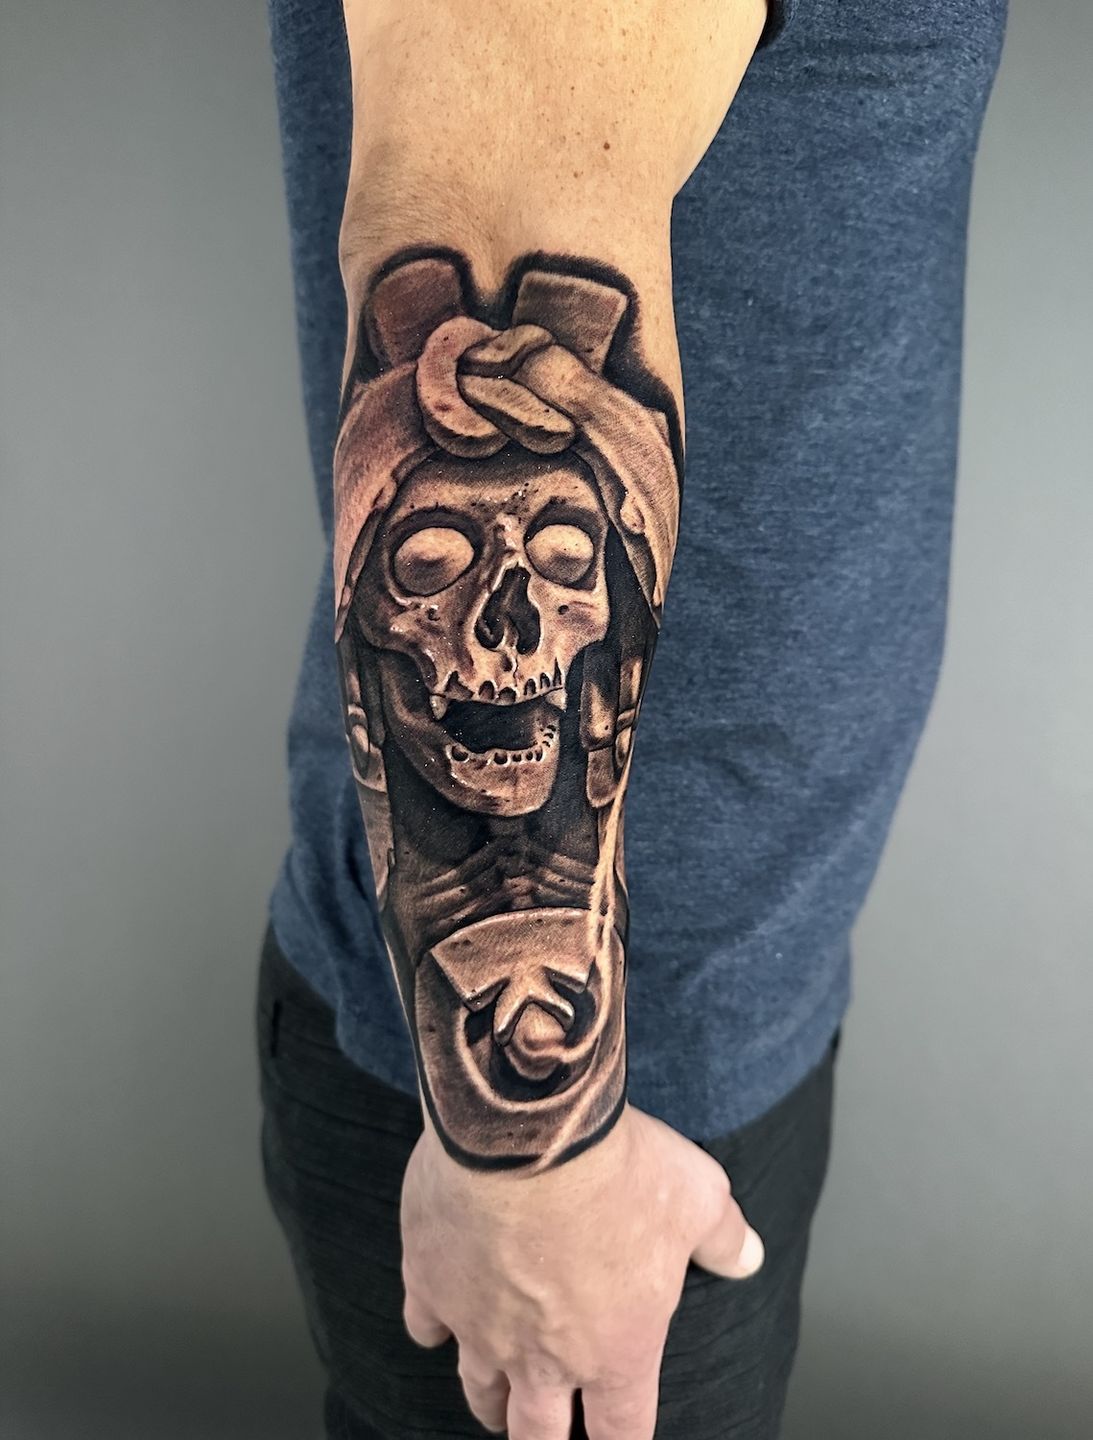 Skull hand holding gun pistol death tattoo Vector Image